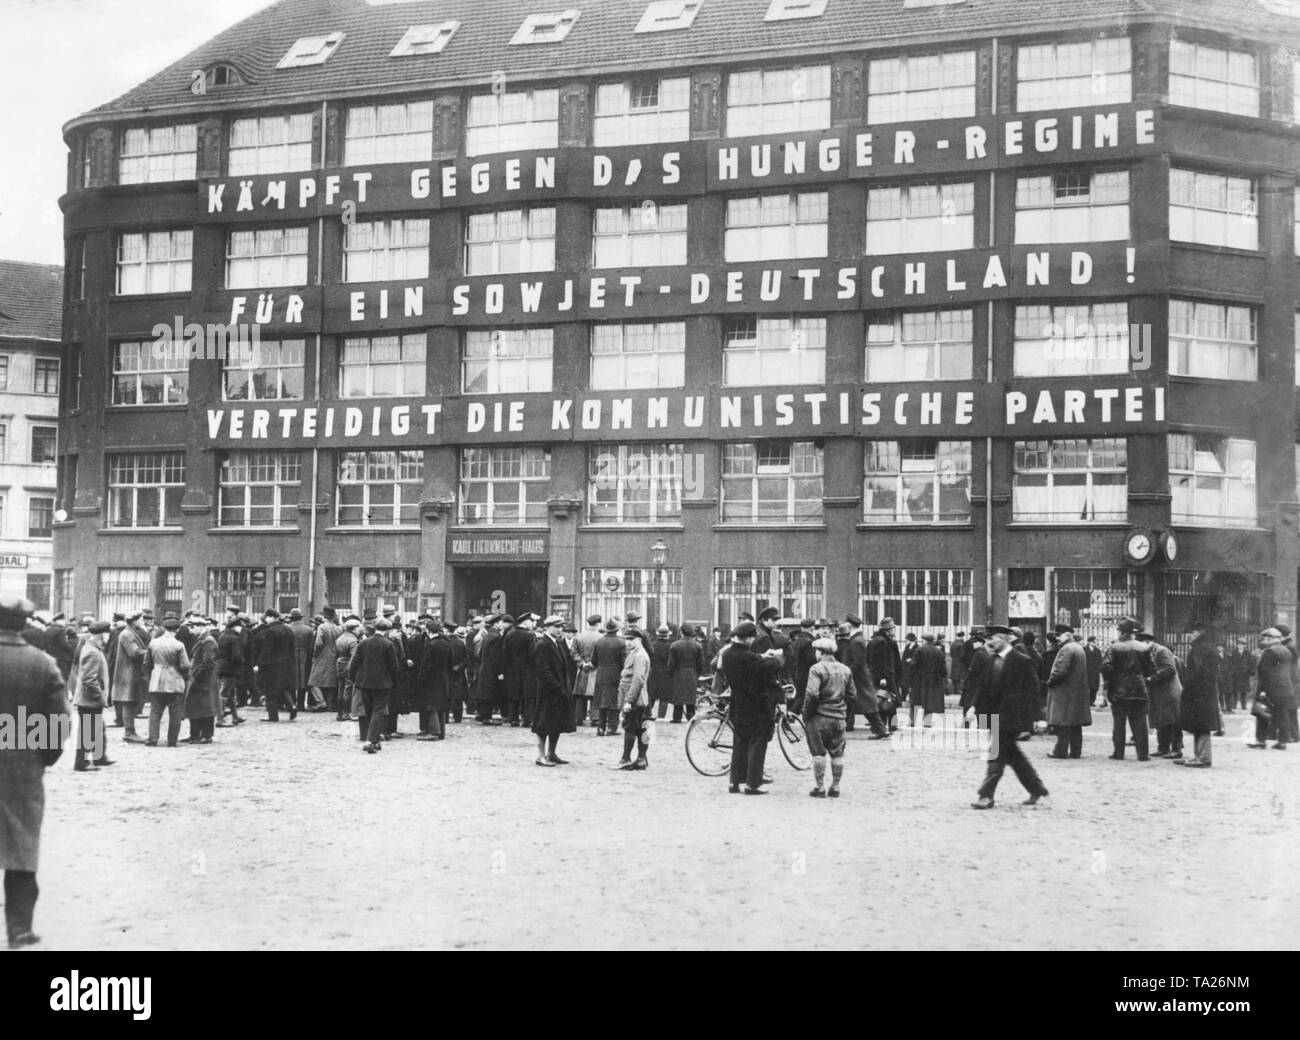 Eine Menschenmenge sammelt sich vor dem Hauptquartier der kommunistischen Partei und der Redaktion der 'Die Rote Fahne', das Karl-Liebknecht-Haus an der Buelowplatz in Berlin. Auf dem Haus befindet sich die Aufschrift "gegen Den hunger Regelung für einen sowjetischen Deutschland kämpfen! Die Kommunistische Partei verteidigen. Stockfoto